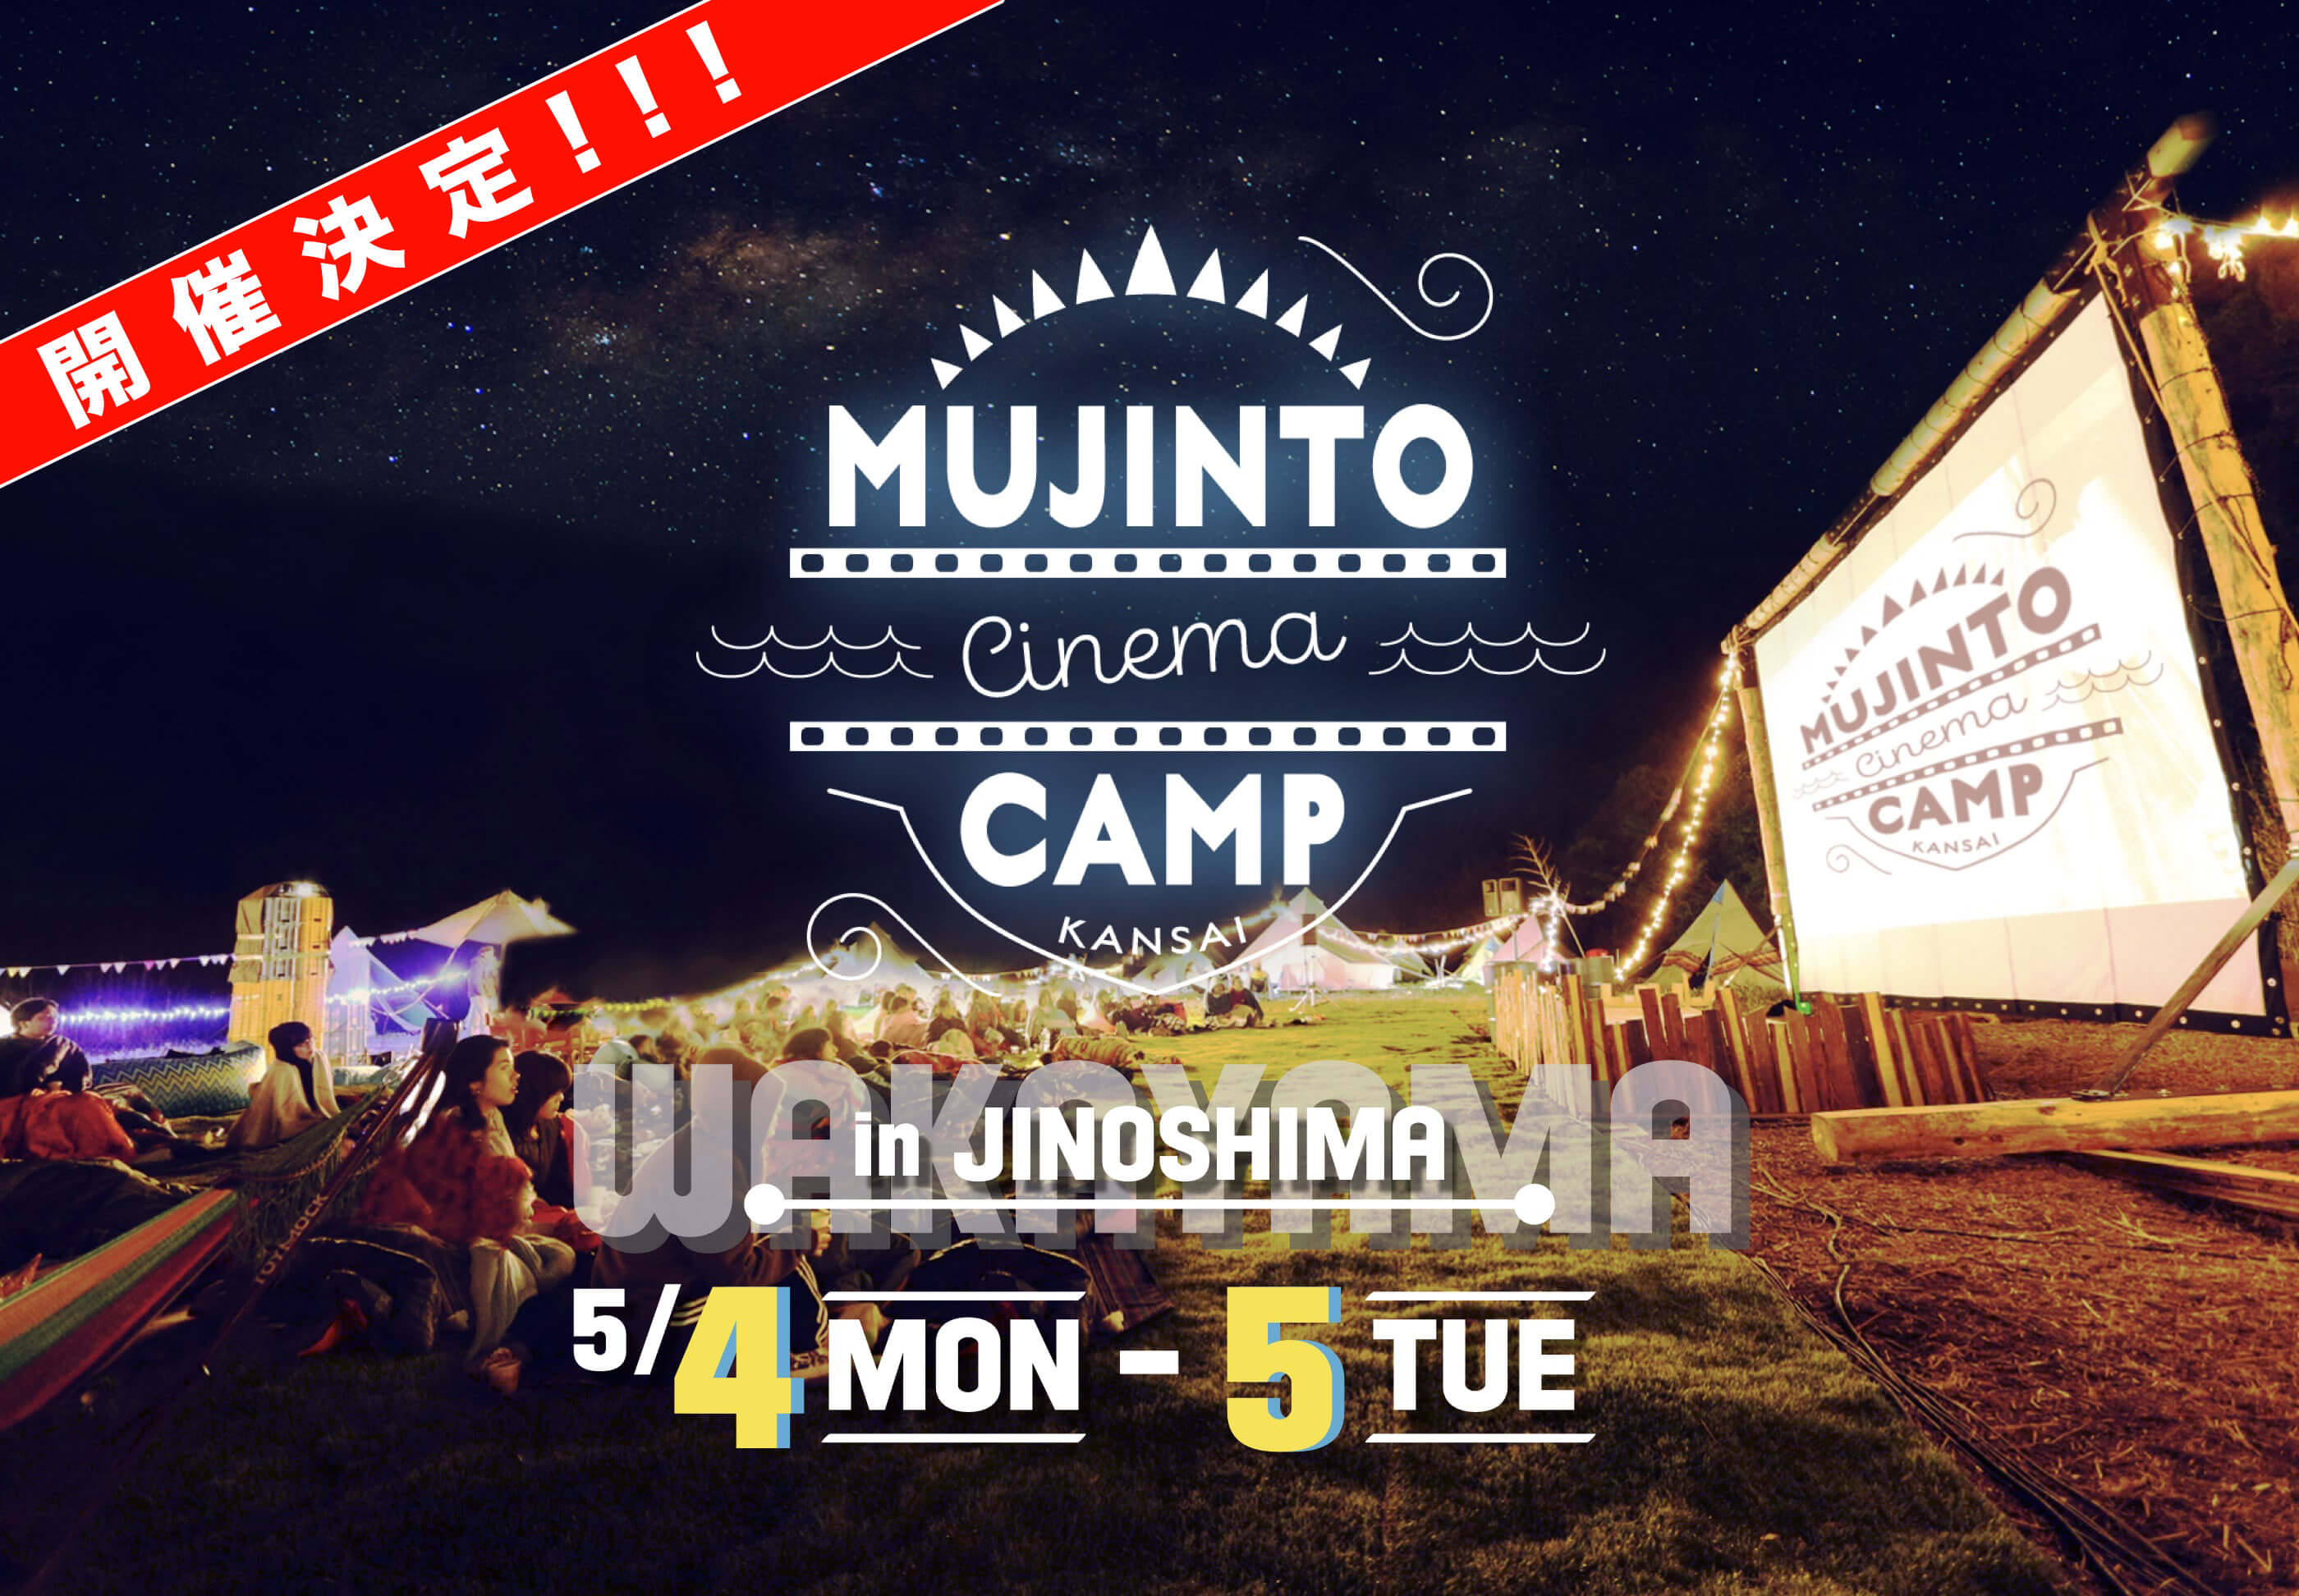 無人島で野外シネマフェス開催 Mujinto Cinema Camp Kansai 2020 上映映画2作目が スタンド バイ ミー に決定 早割期限迫る 株式会社ジョブライブのプレスリリース